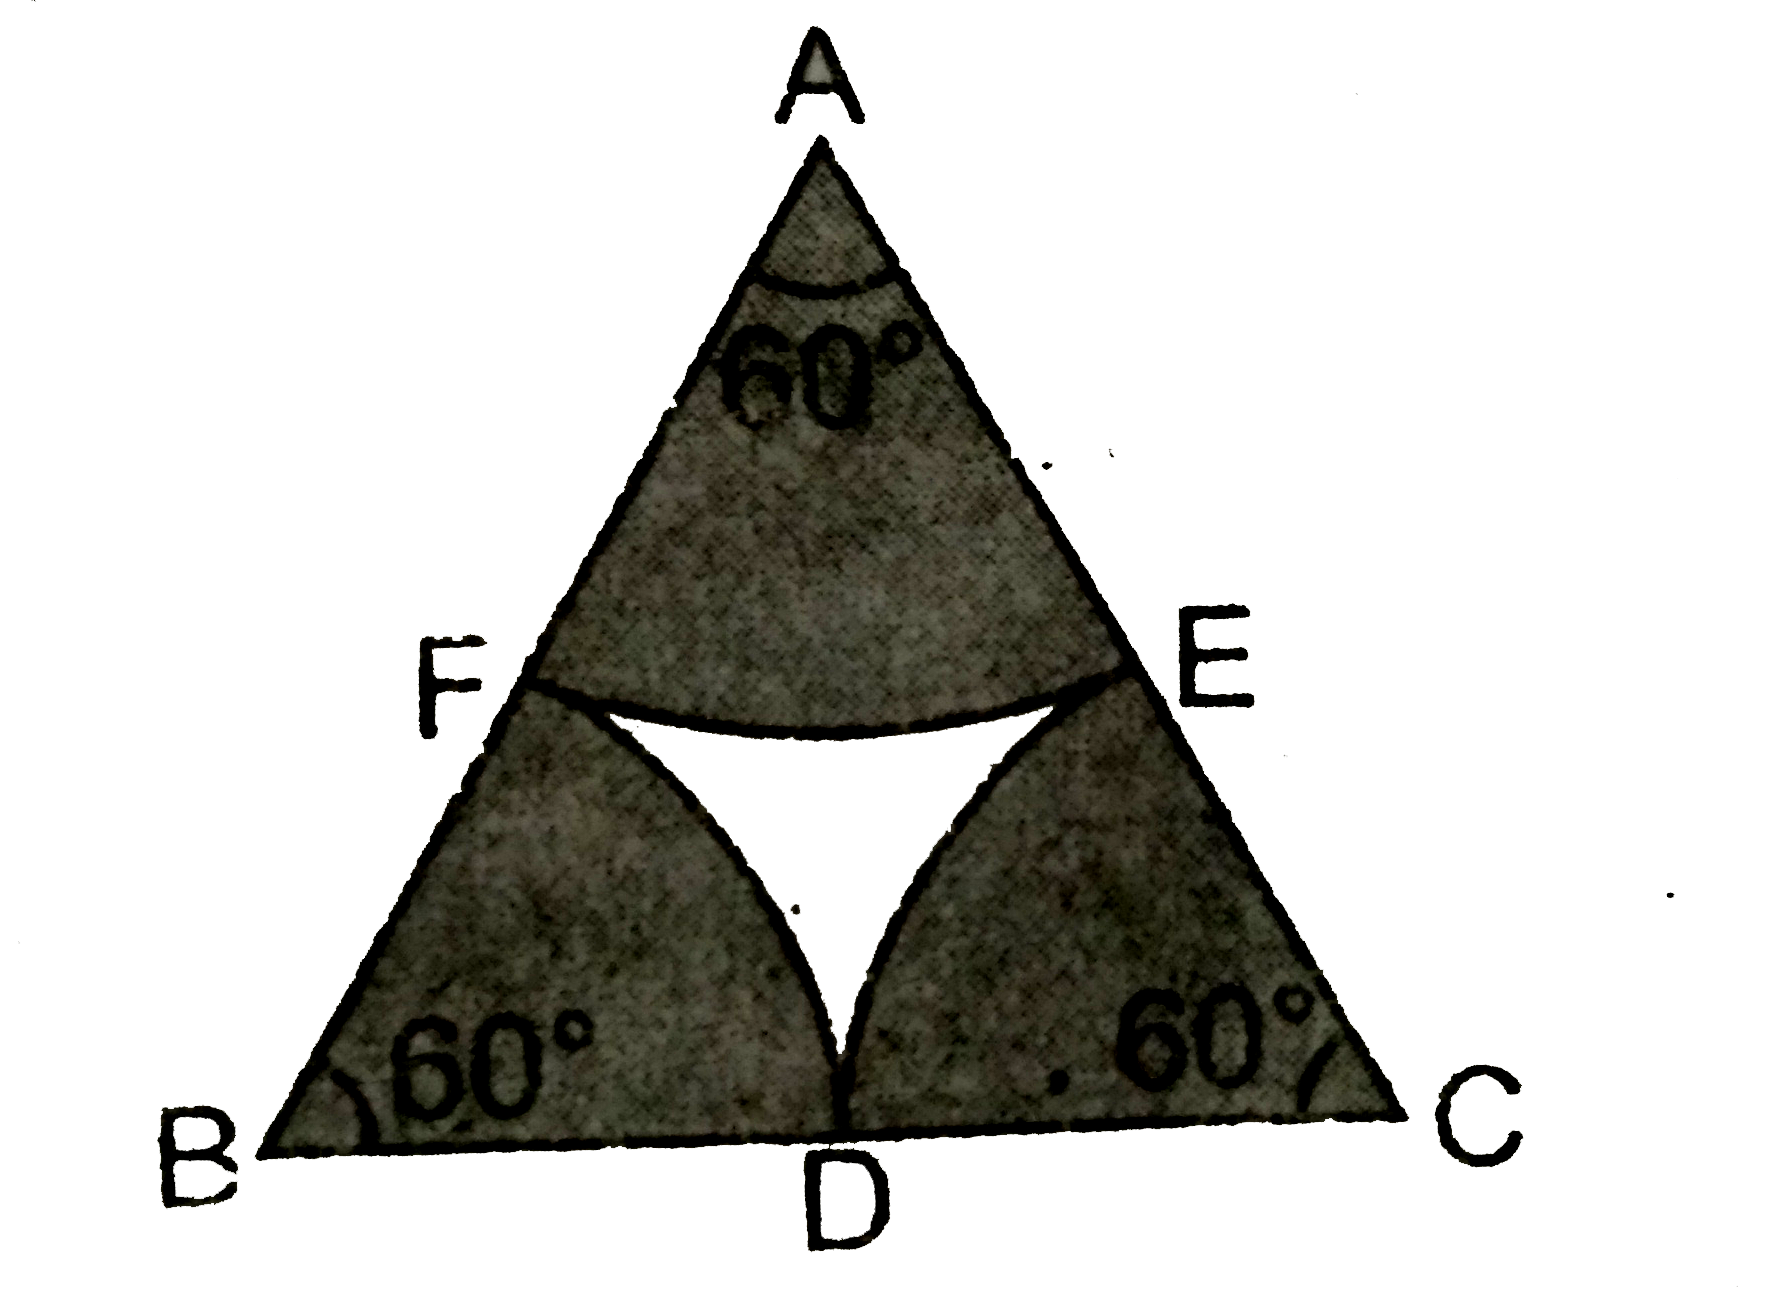 आकृति  के भुजा  10 सेमी  वाले  एक समबाहु त्रिभुज  ABC  में शीर्षों A ,B  और C  को केन्द्र  मनाकर  चाप  इस प्रकार  खींचे  गये  है कि वे भुजाओ  BC, CA और  AB  को क्रमश : उनके  मध्य  बिन्दुओ D,E,F पर  प्रतिच्छेद करे  तो छायांकित  भाग  का क्षेत्रफल  ज्ञात कीजिए  । (pi=3.14 का प्रयोग  कीजिए )